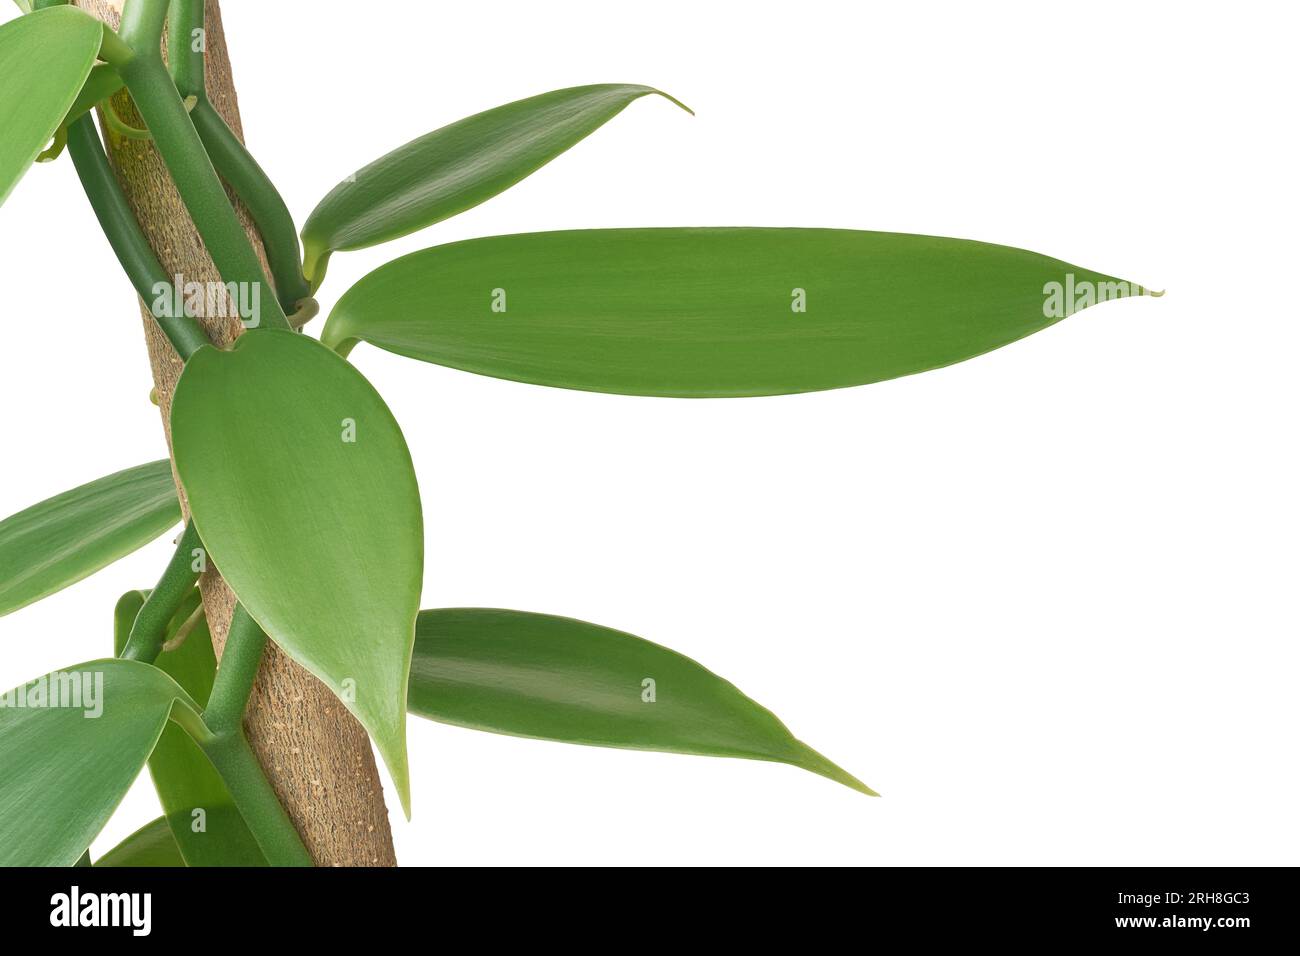 primo piano della pianta di fioritura di orchidee alla vaniglia che si arrampica sull'albero, nota anche come vaniglia a lievitazione piatta, pianta dalla quale si ottiene o si ricava isolata la vaniglia Foto Stock